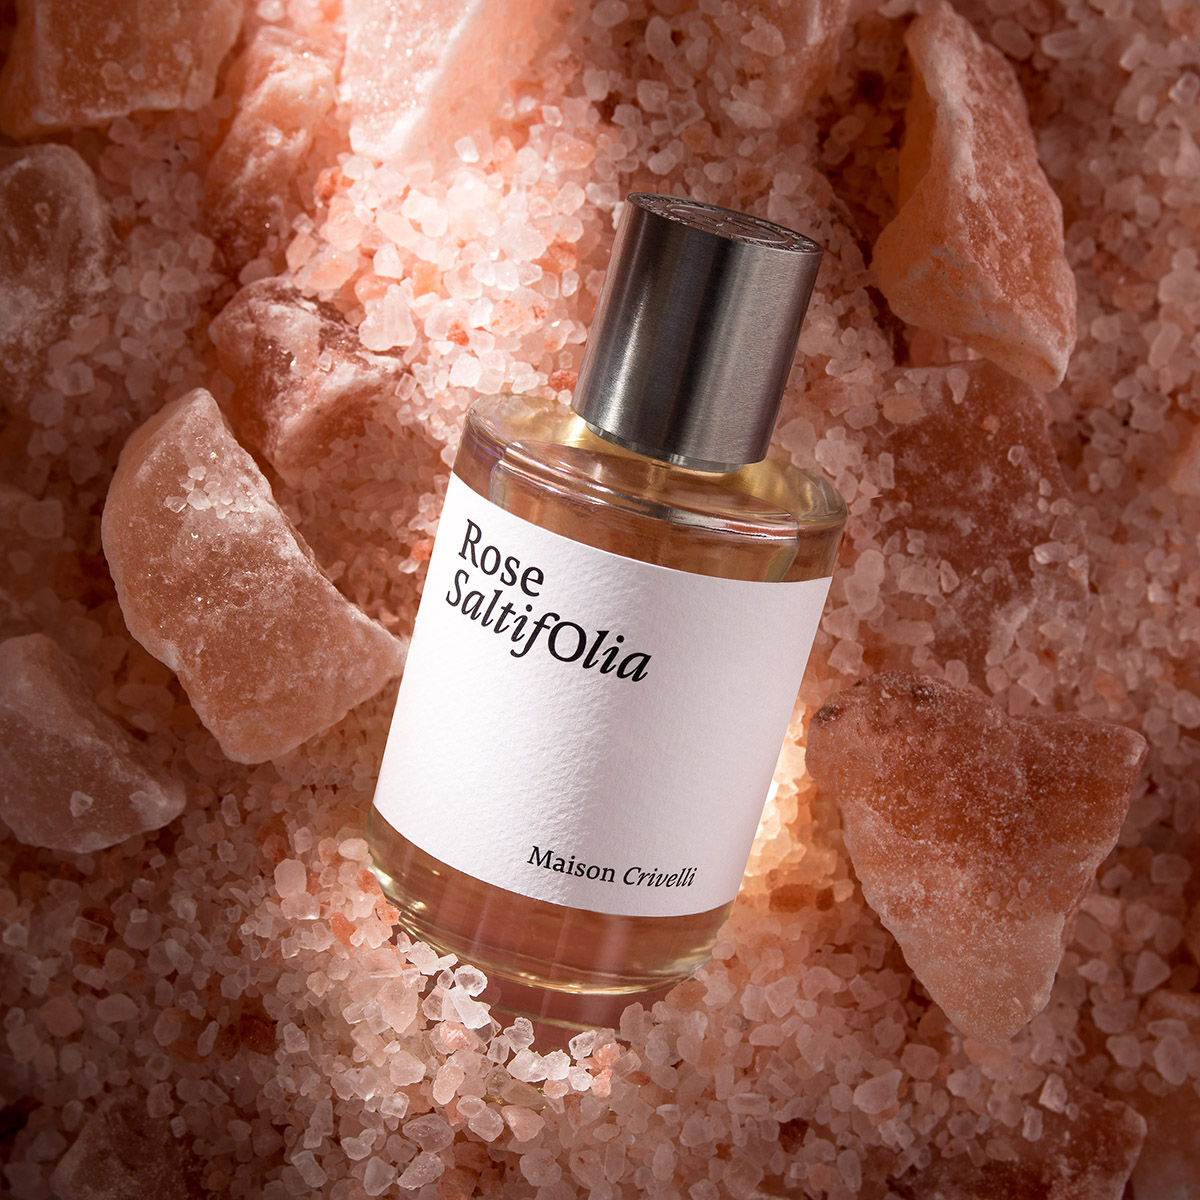 Maison Crivelli - Rose Saltifolia Eau de Parfum